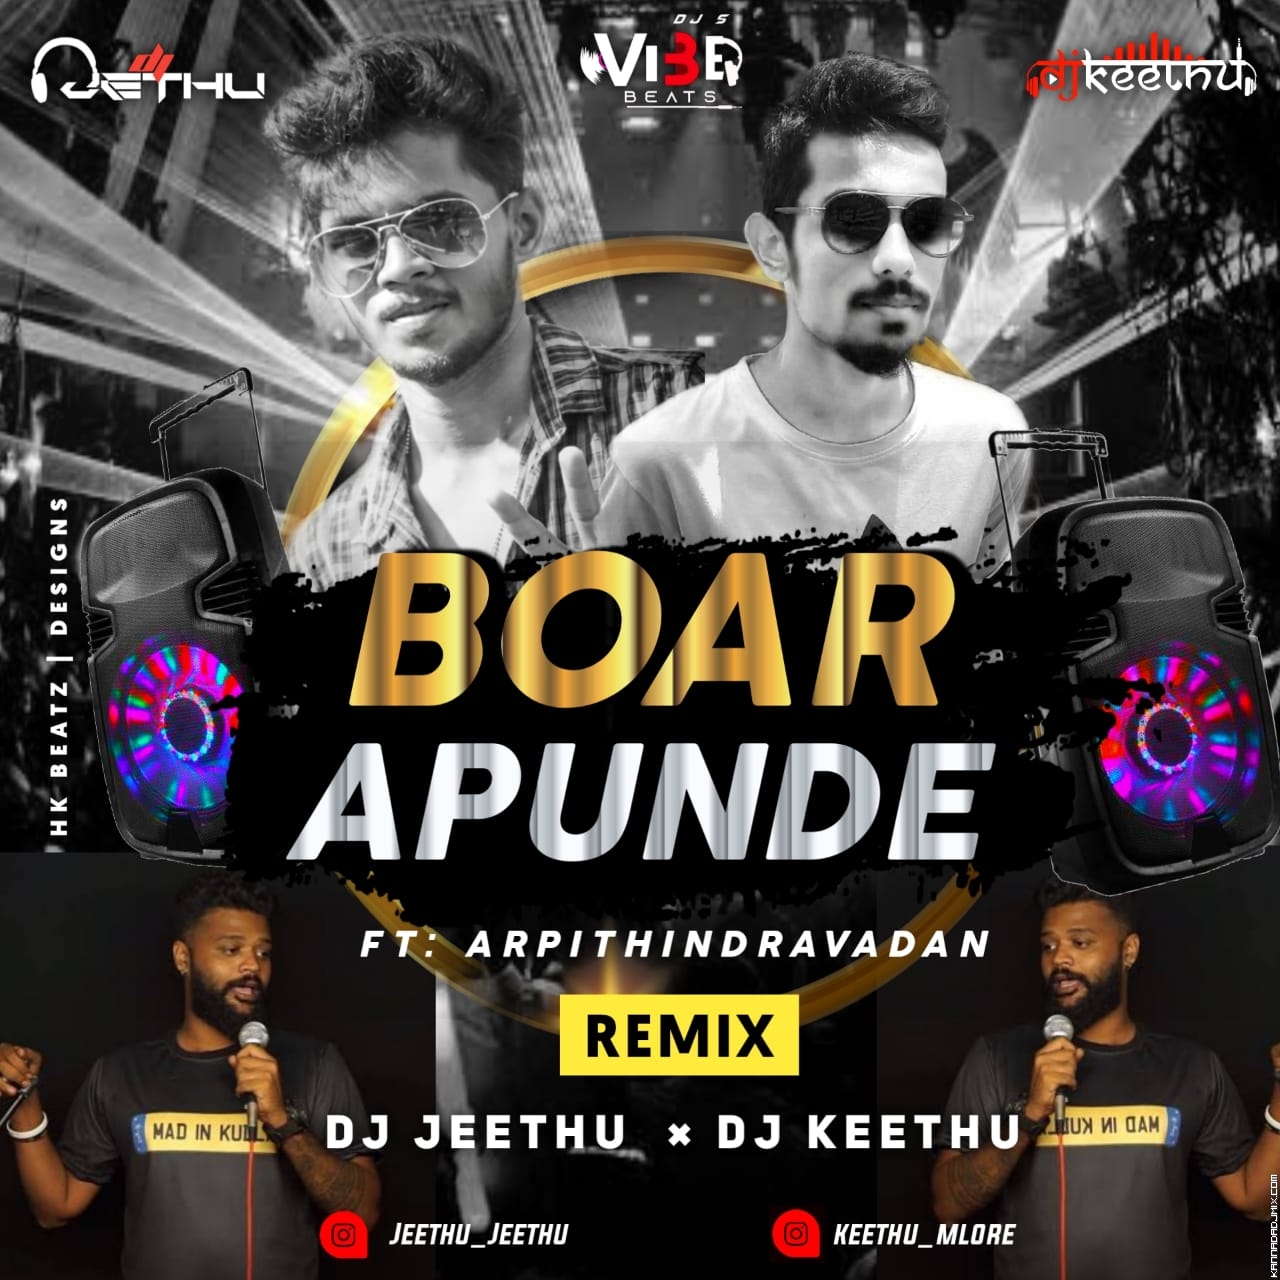 Boar Apunde Remix Vibe Beats DJs Dj Jeethu Dj Keethu.mp3